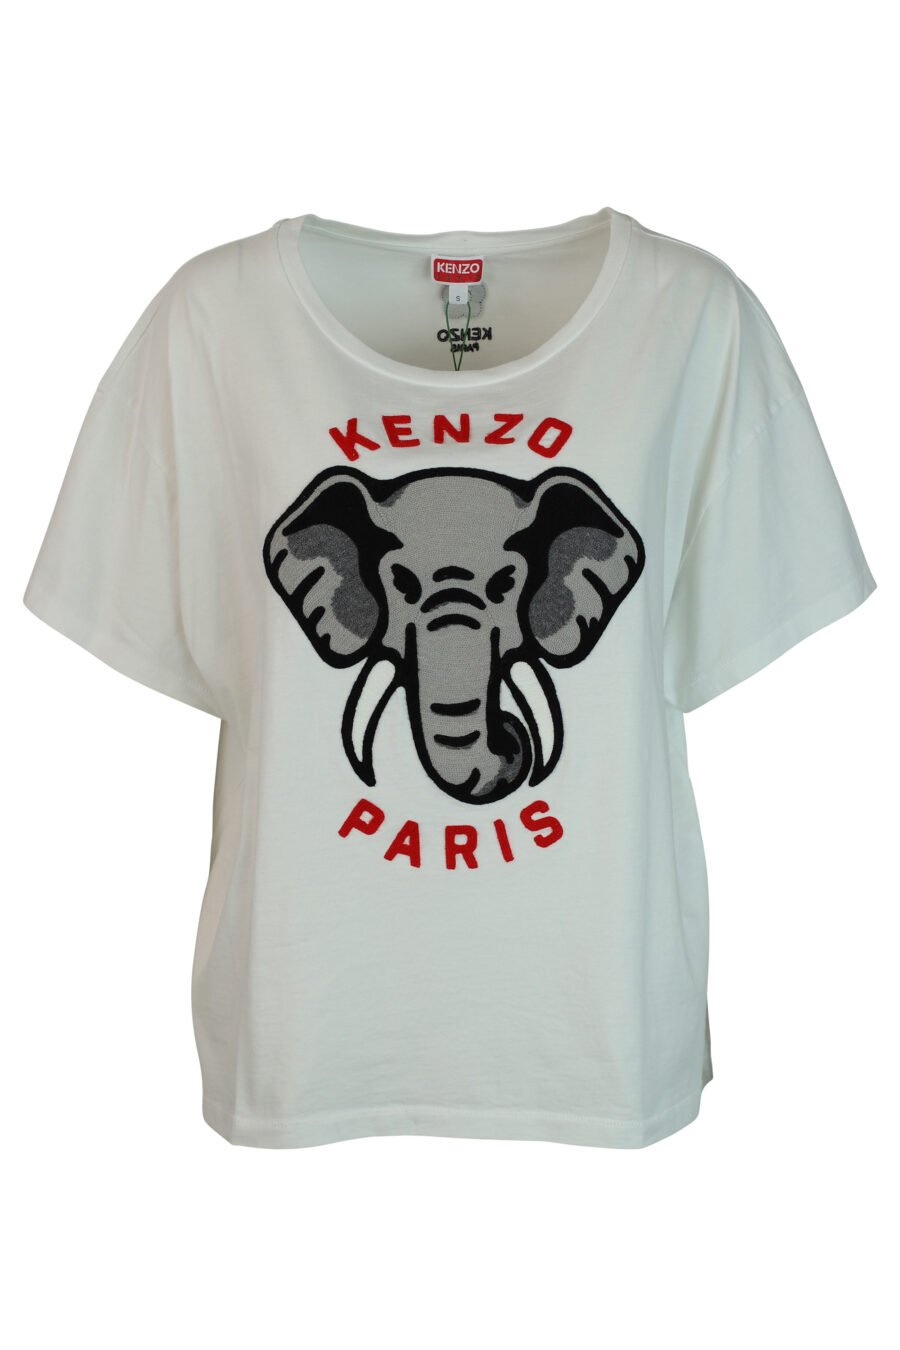 Weißes T-Shirt mit Elefanten-Maxilogo - 3612230460119